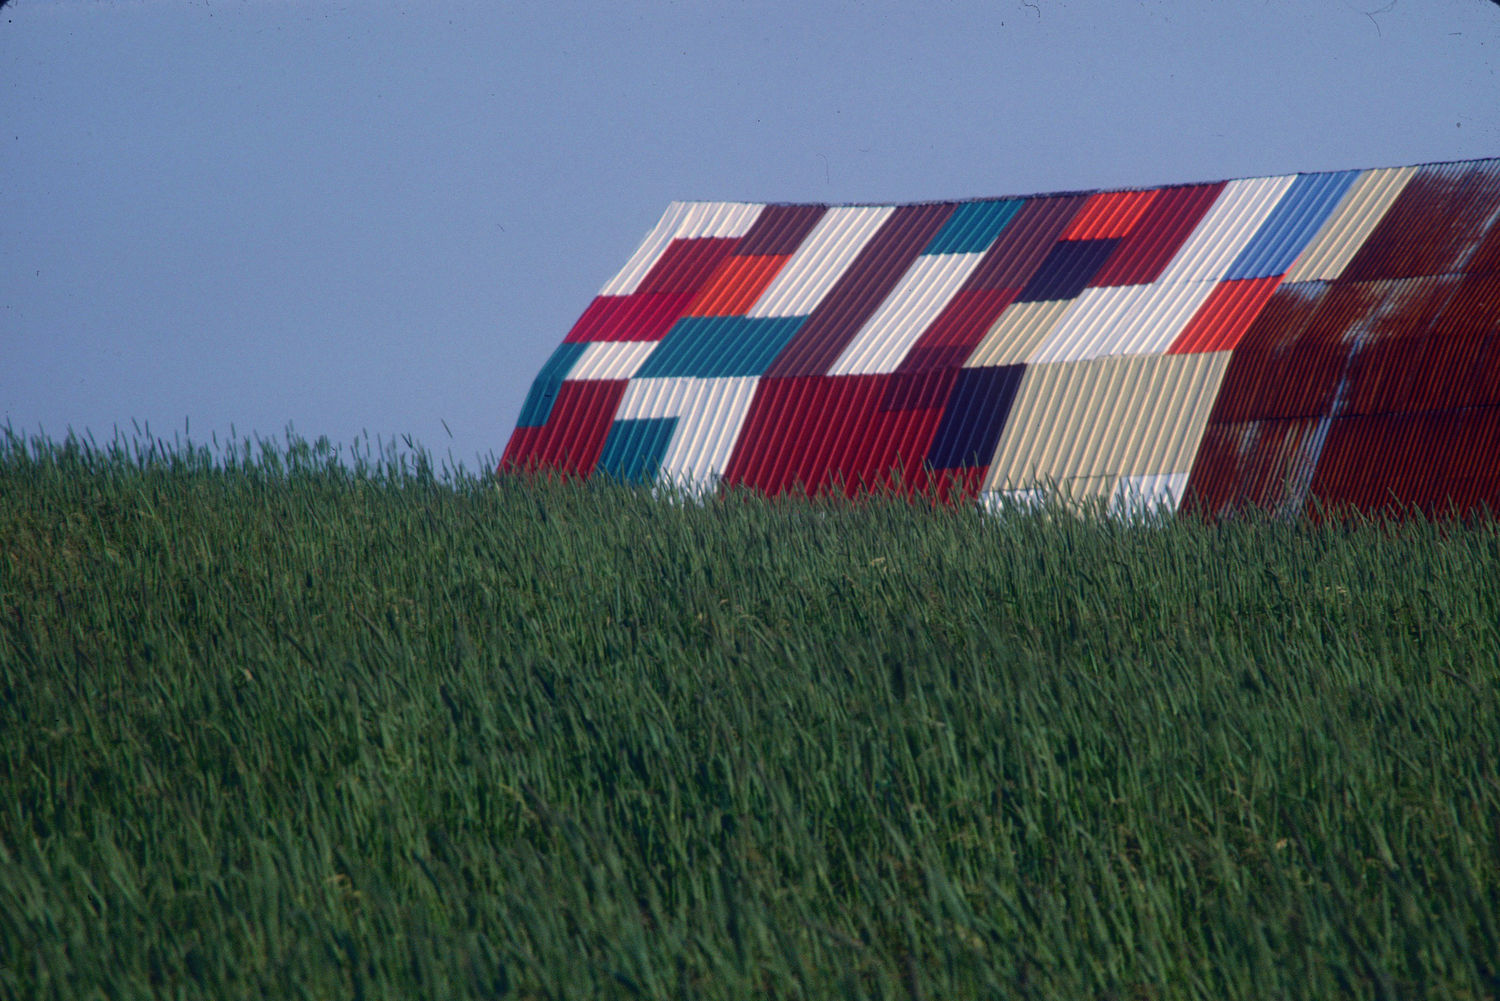 Photographie couleur d'un champs de verdure avec à l'arrière-plan le toit d'un édifice en tôle aux pièces multicolores.